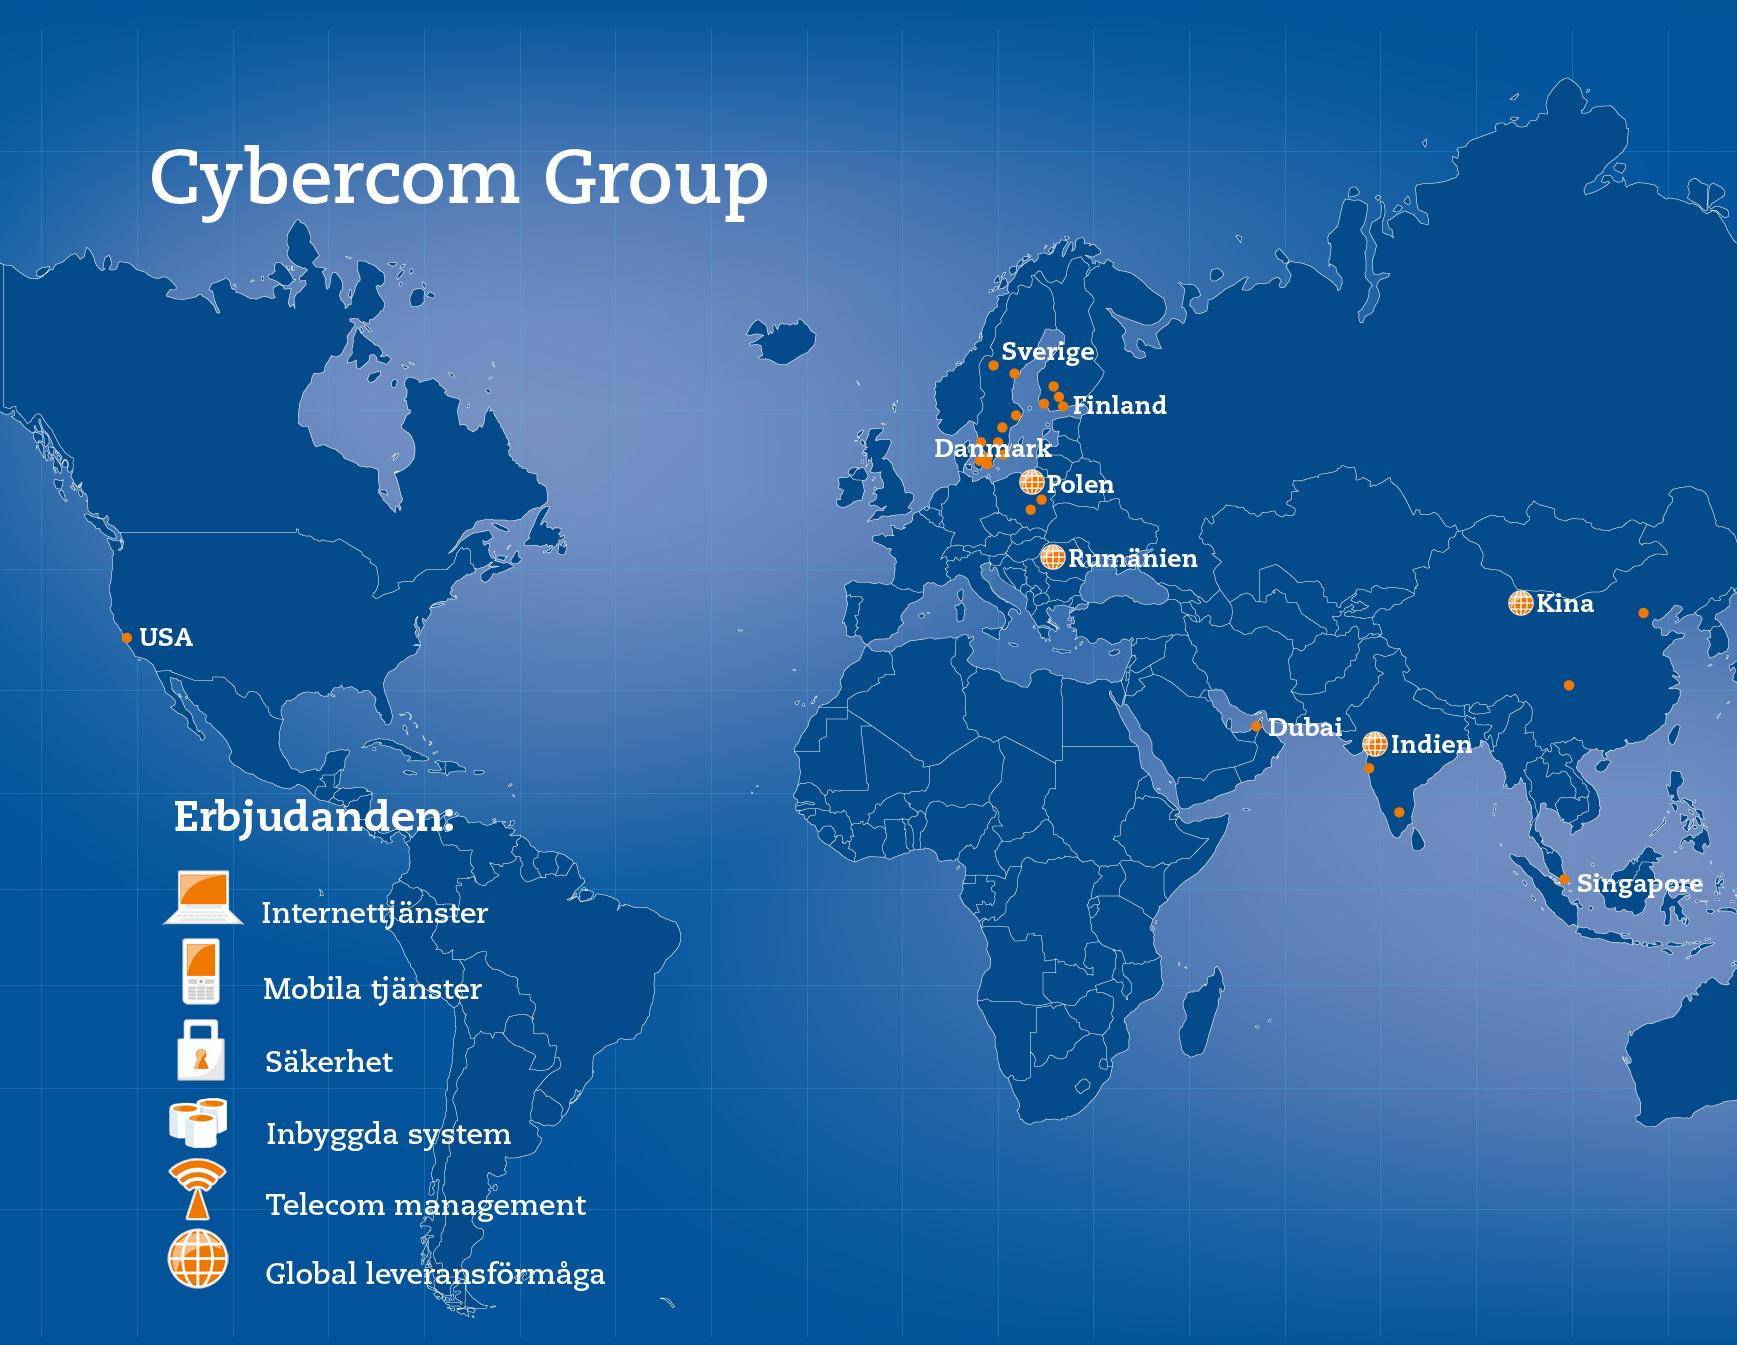 Cybercom verkar i nära samarbete med kunden och kan samtidigt erbjuda global leveransförmåga.